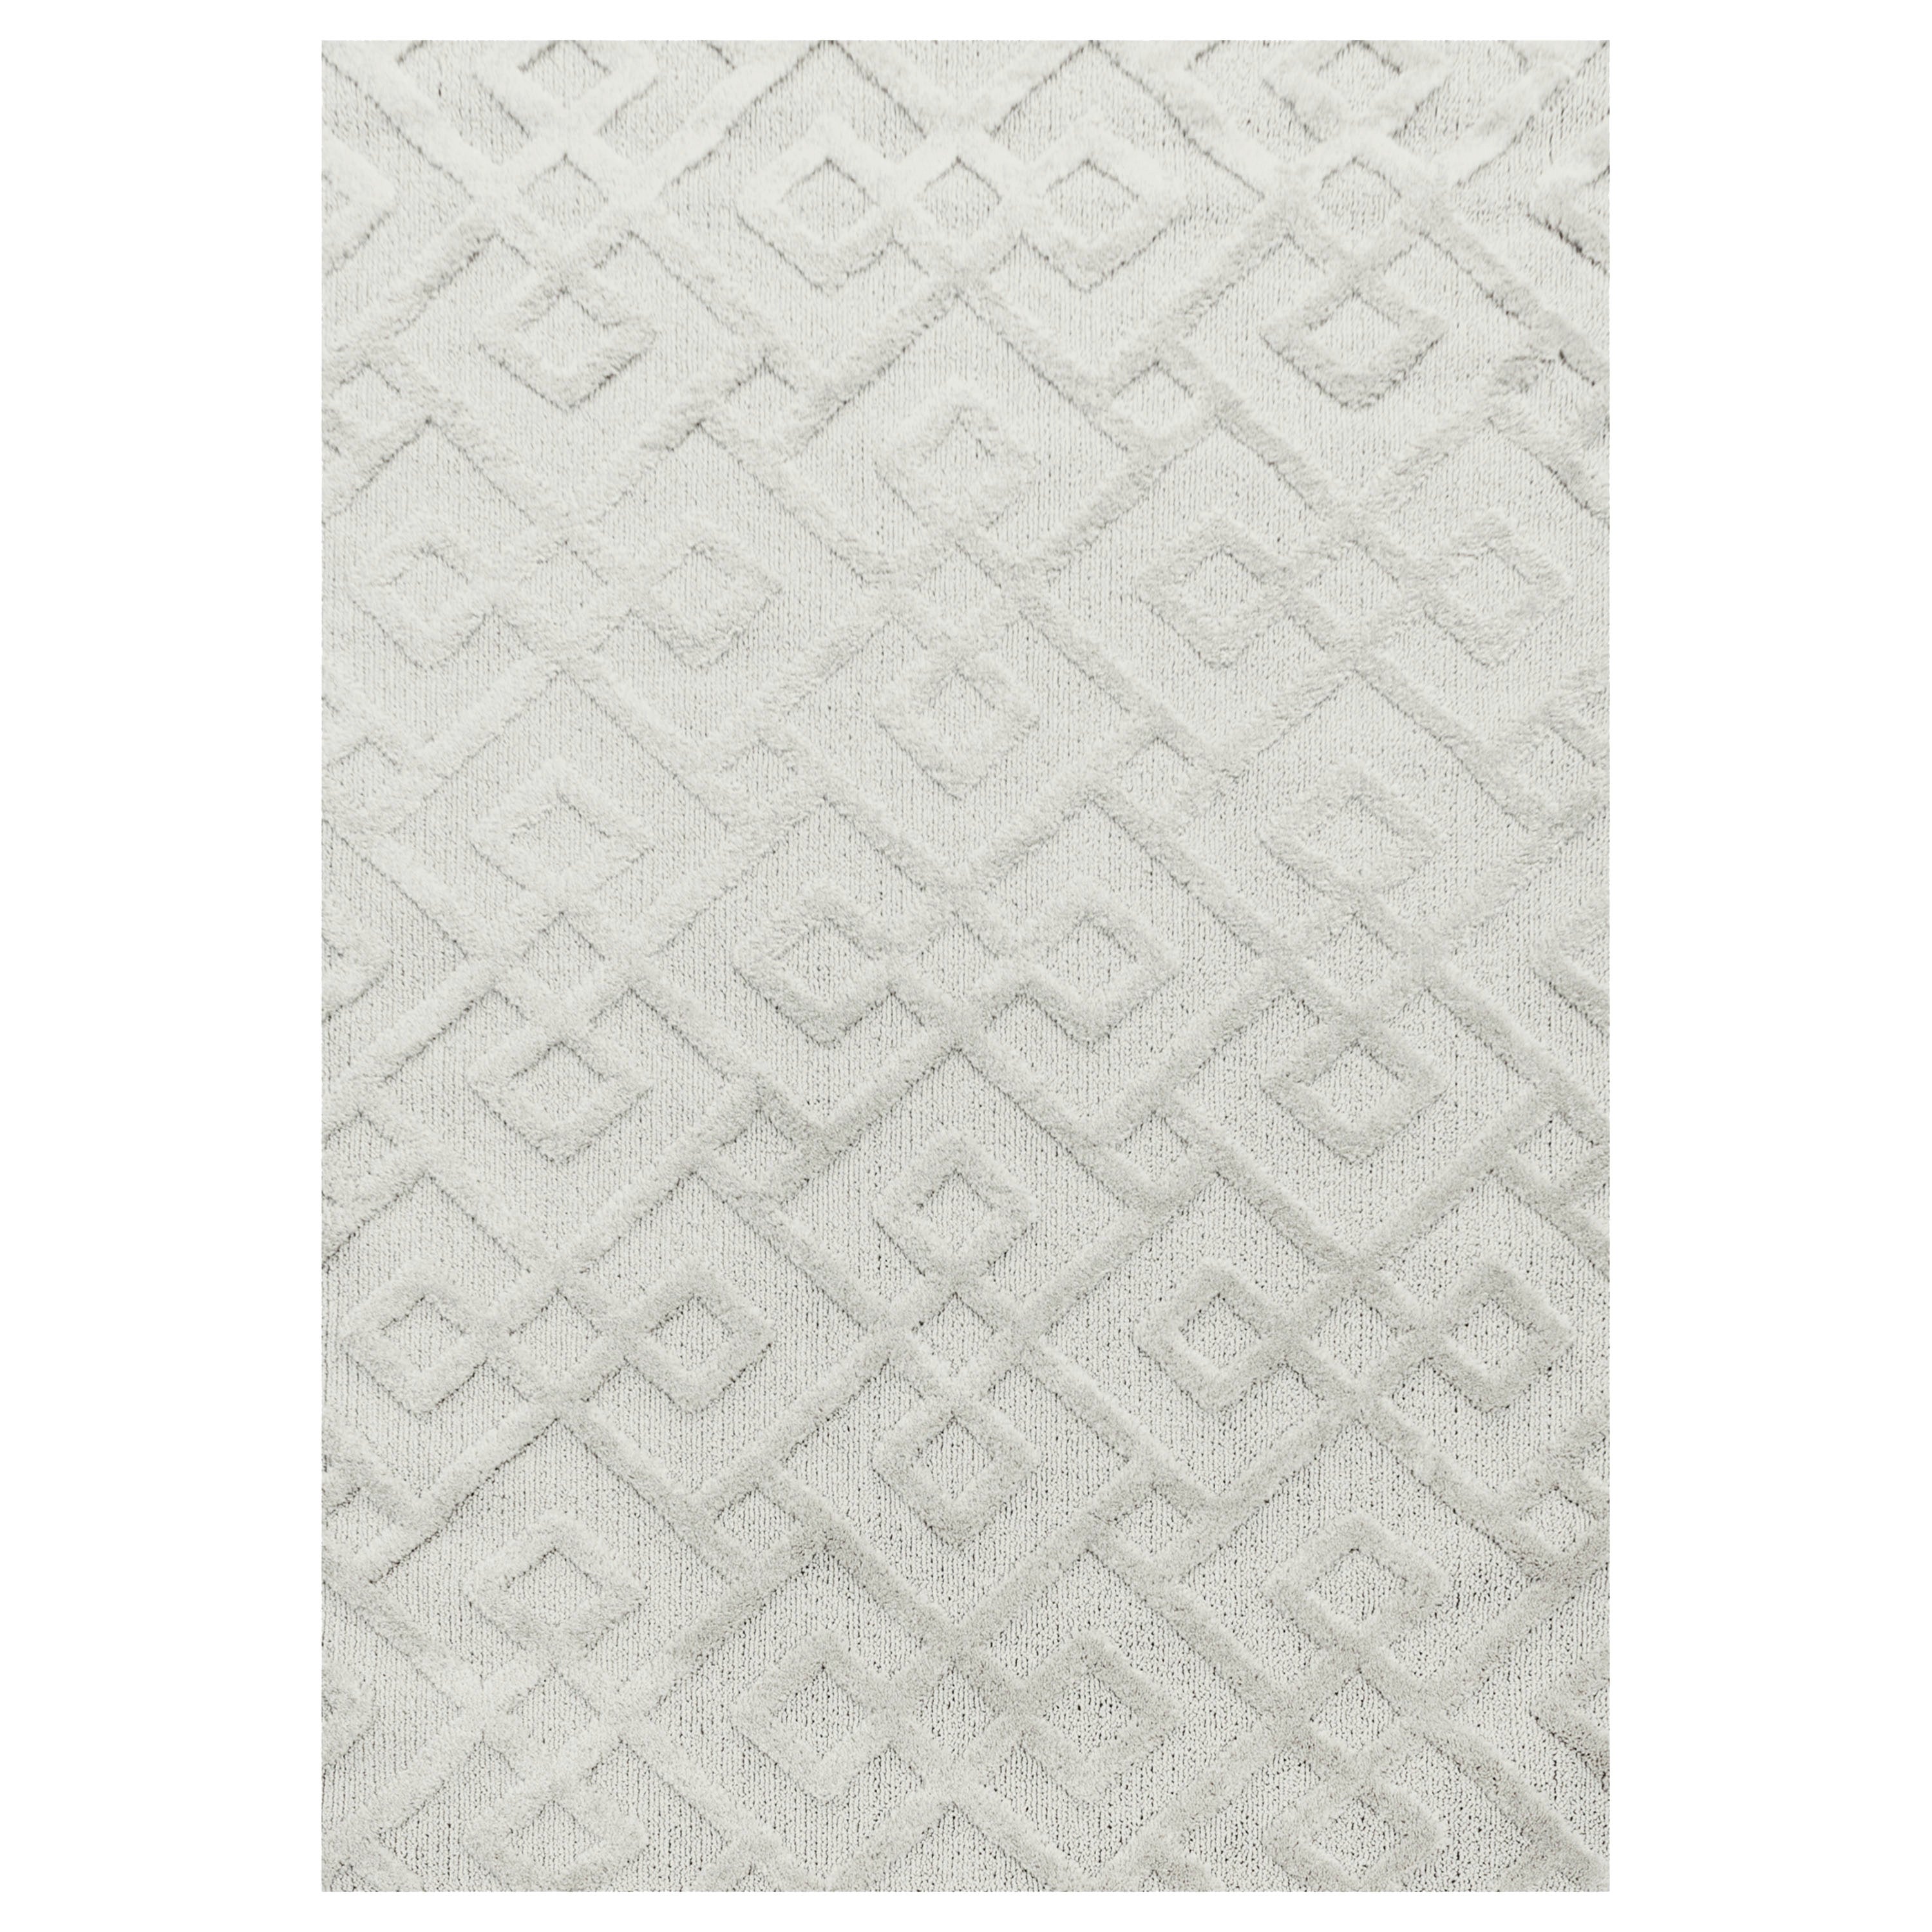 Tapis bohème à relief blanc ivoire 140x200cm